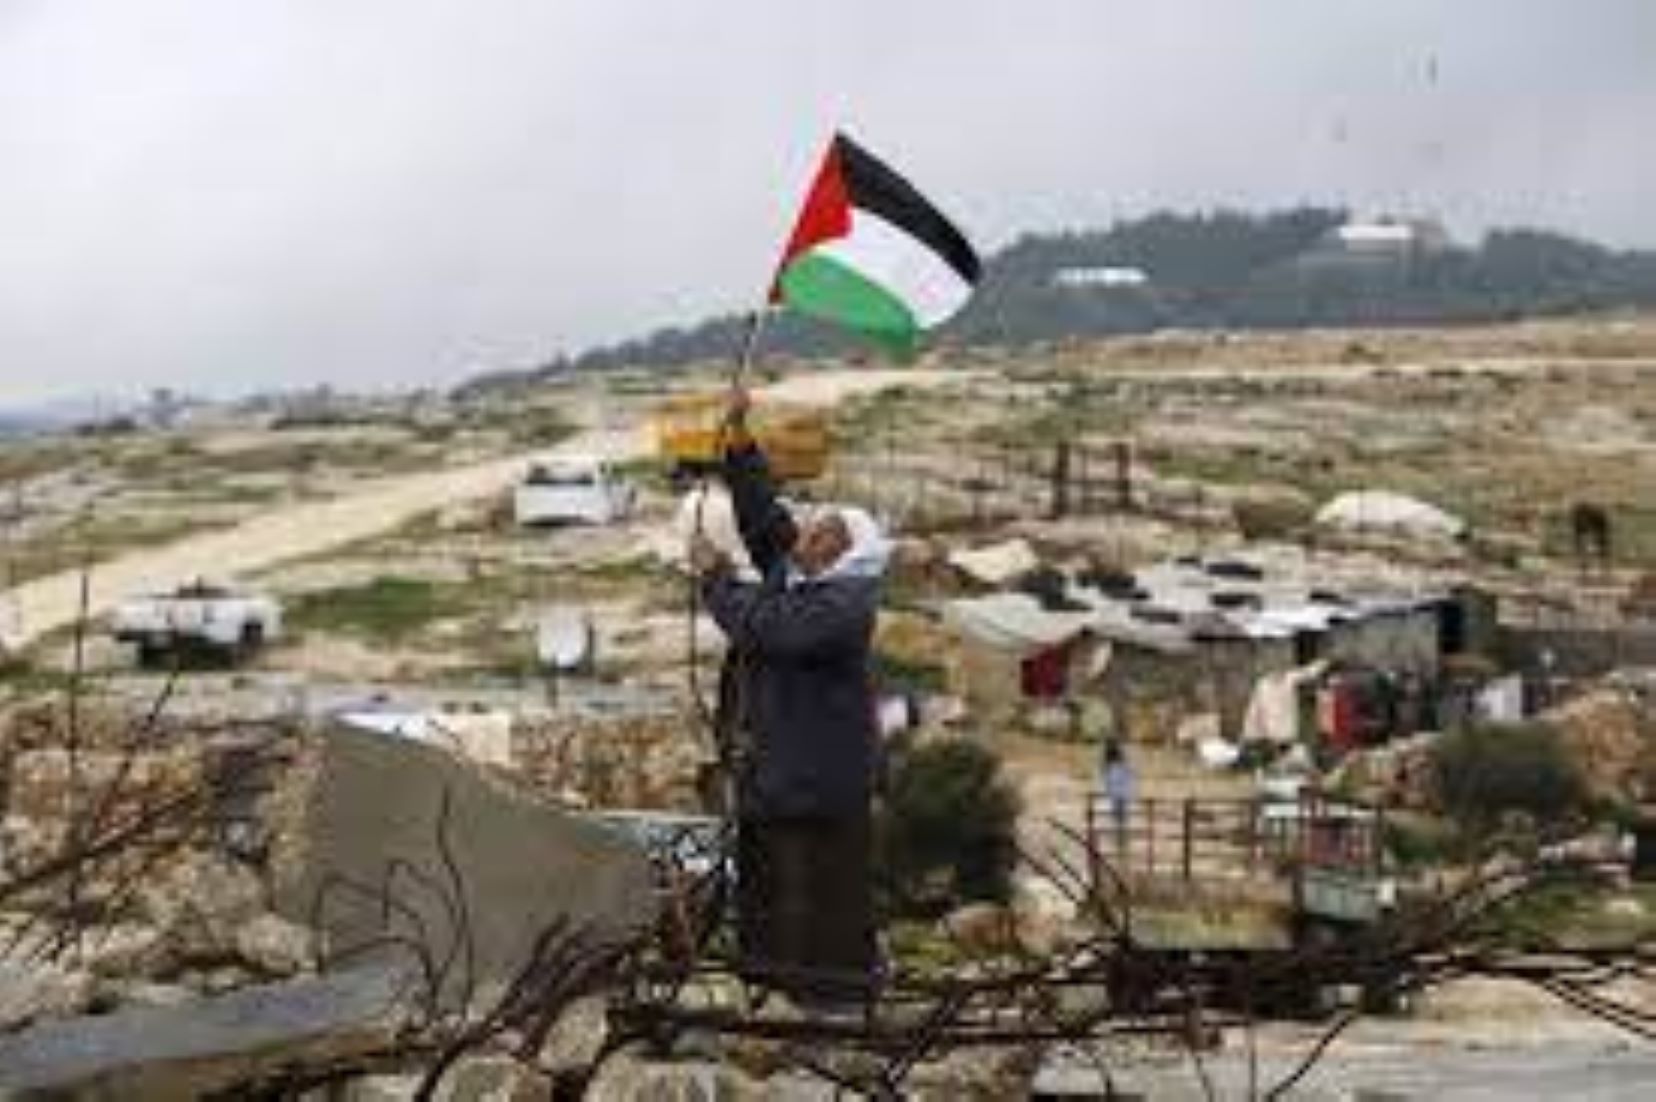 Palestinian President Says Statehood Key To Regional Stability